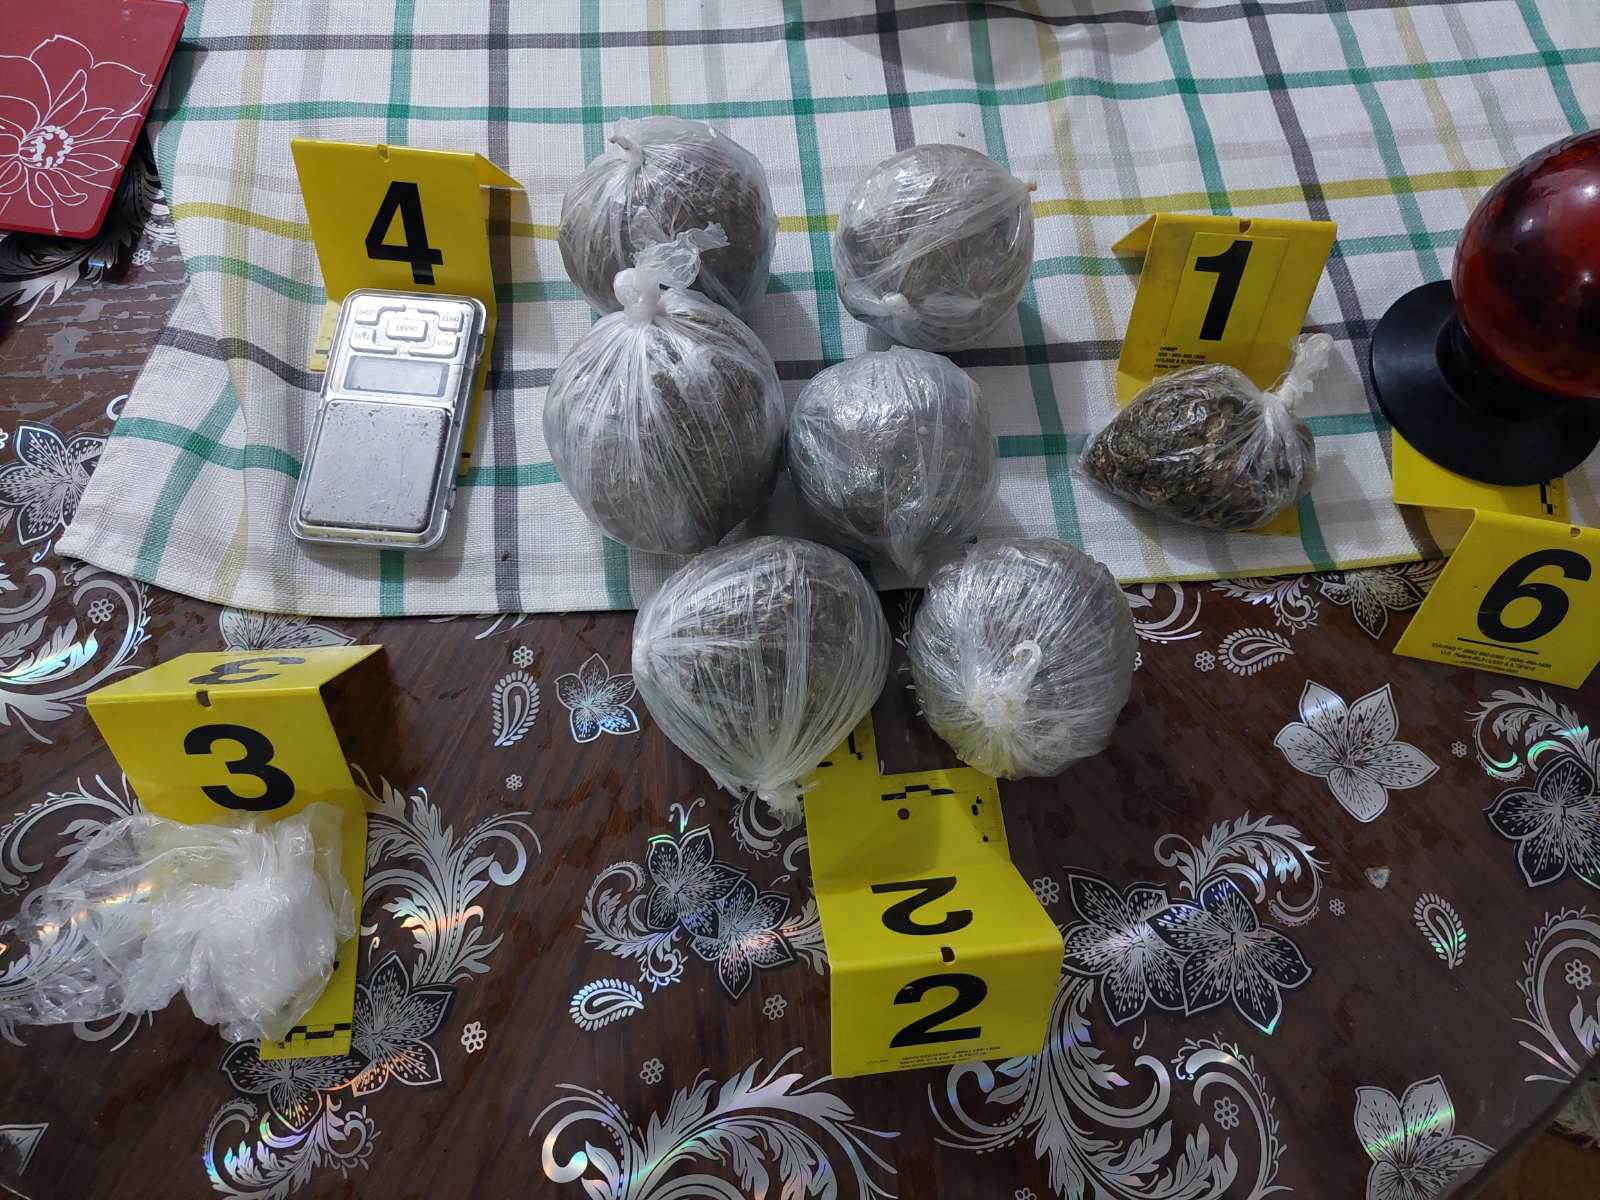  Policija u kući maloljetnika pronašla drogu 